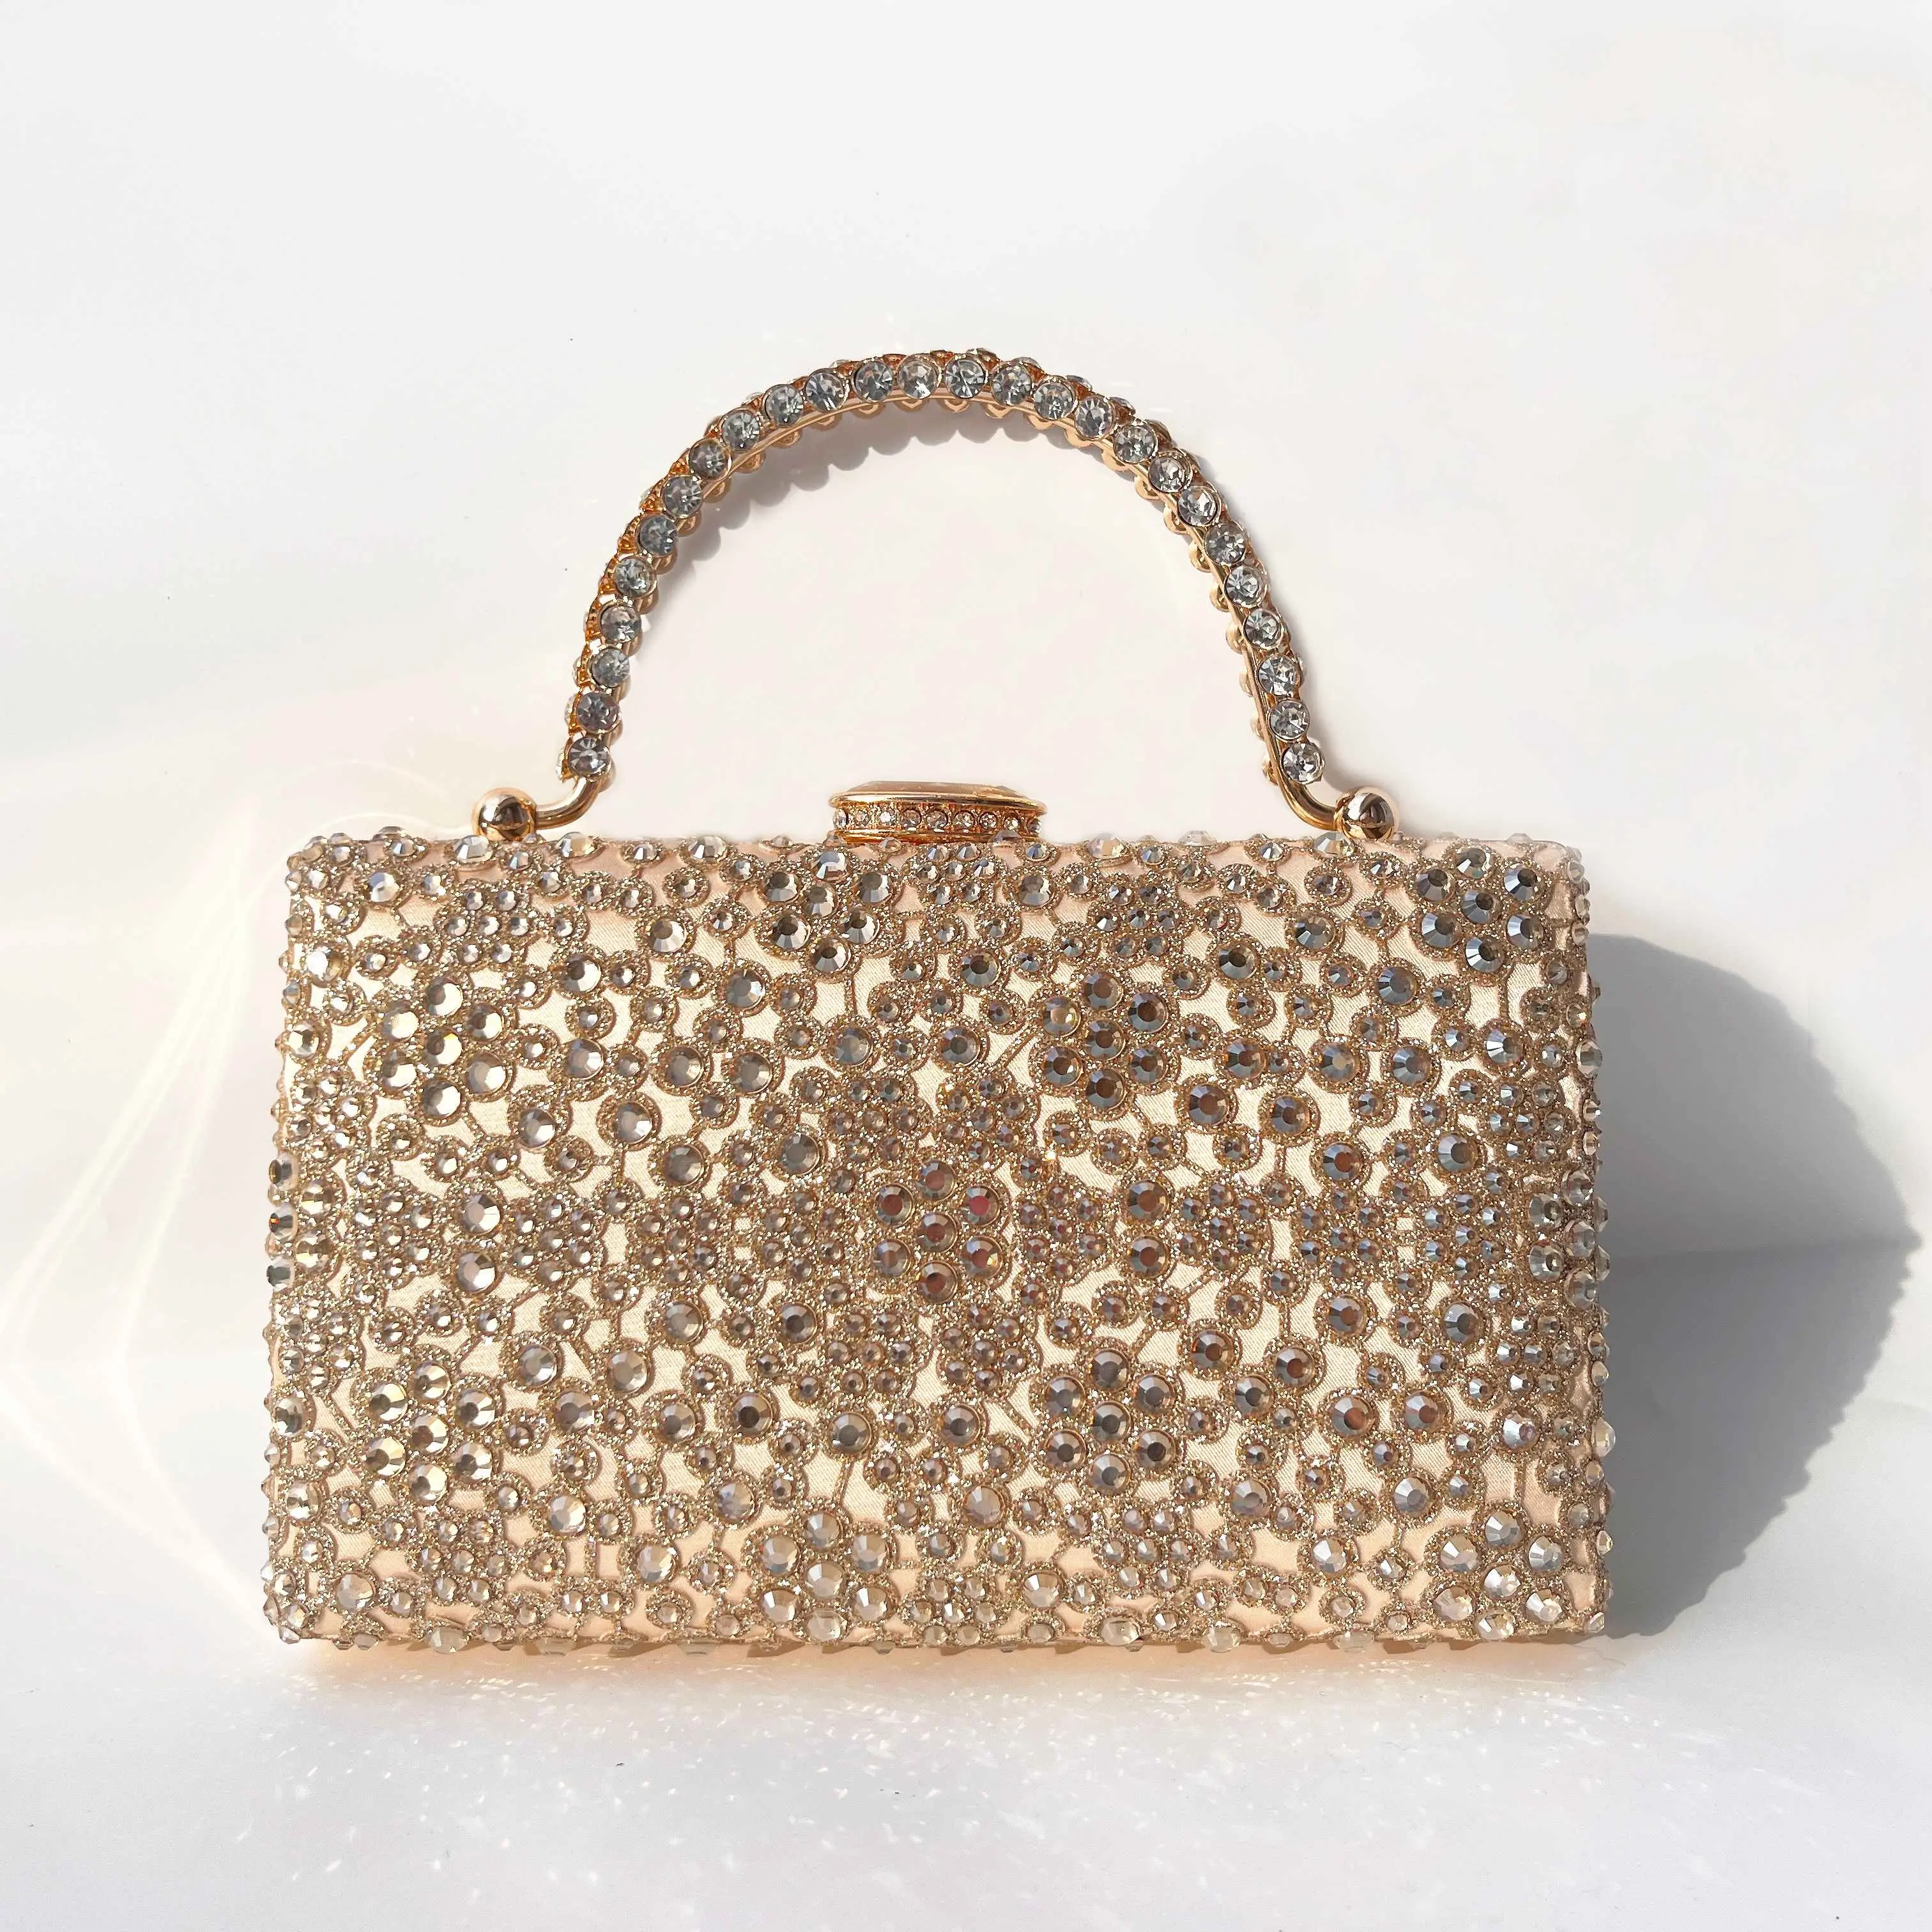 Rhinestone Crystal Elegant Evening Clutch Bag Diamond Champagne Party Wedding Handbag With Chain Strap Women Purse